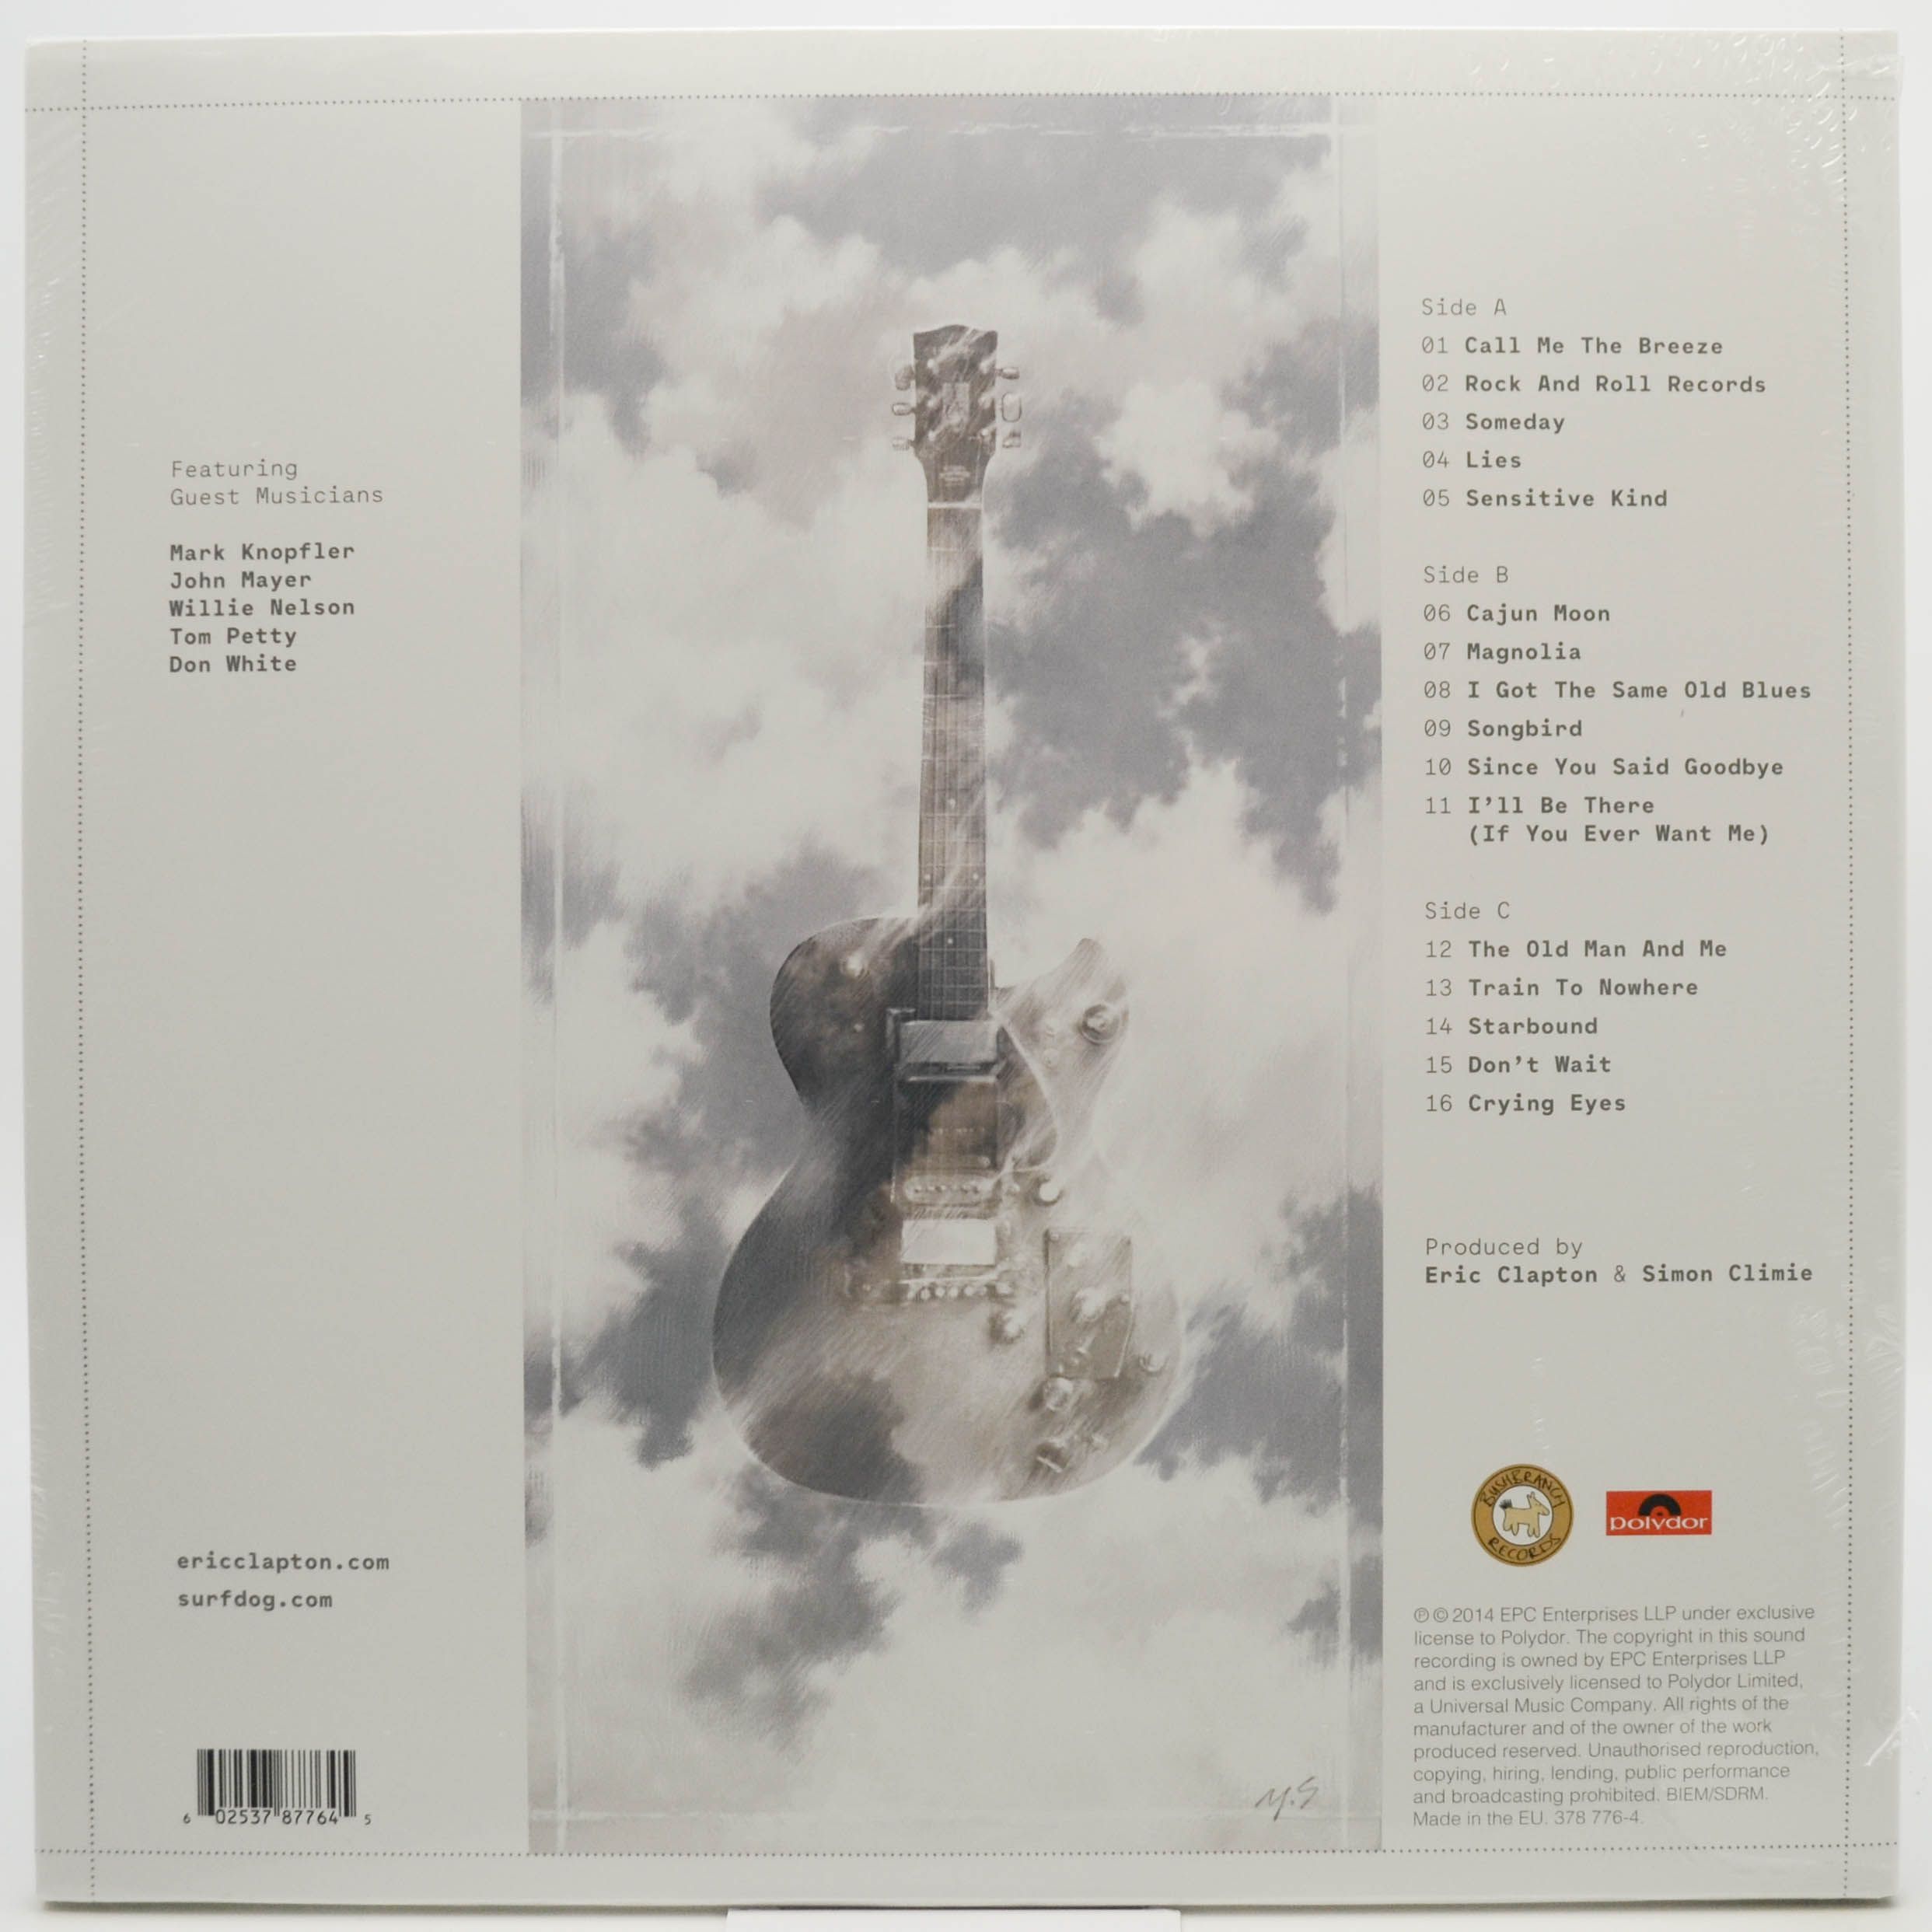 Eric Clapton & Friends — The Breeze (An Appreciation Of JJ Cale) (2LP), 2014